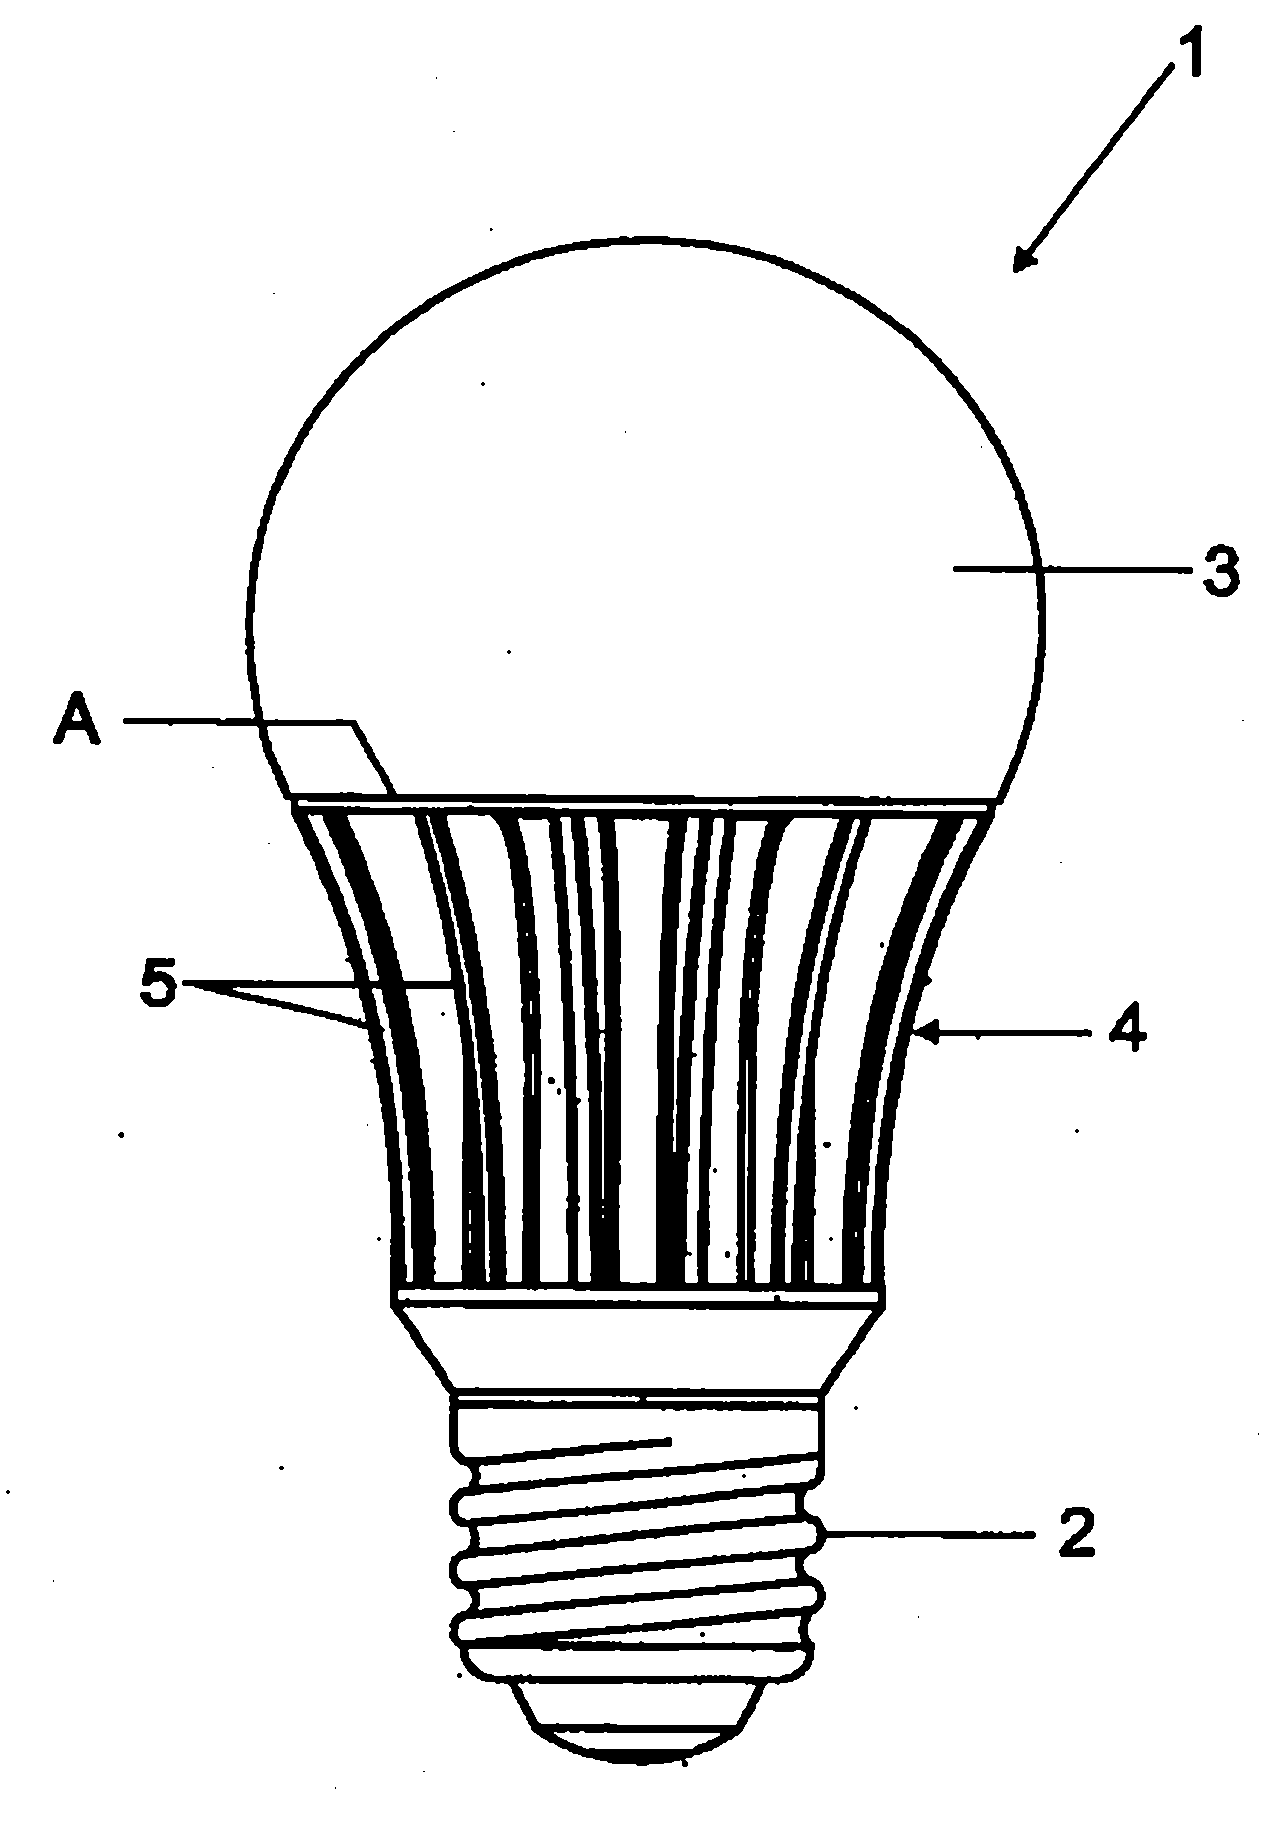 Illumination apparatus with heat sink